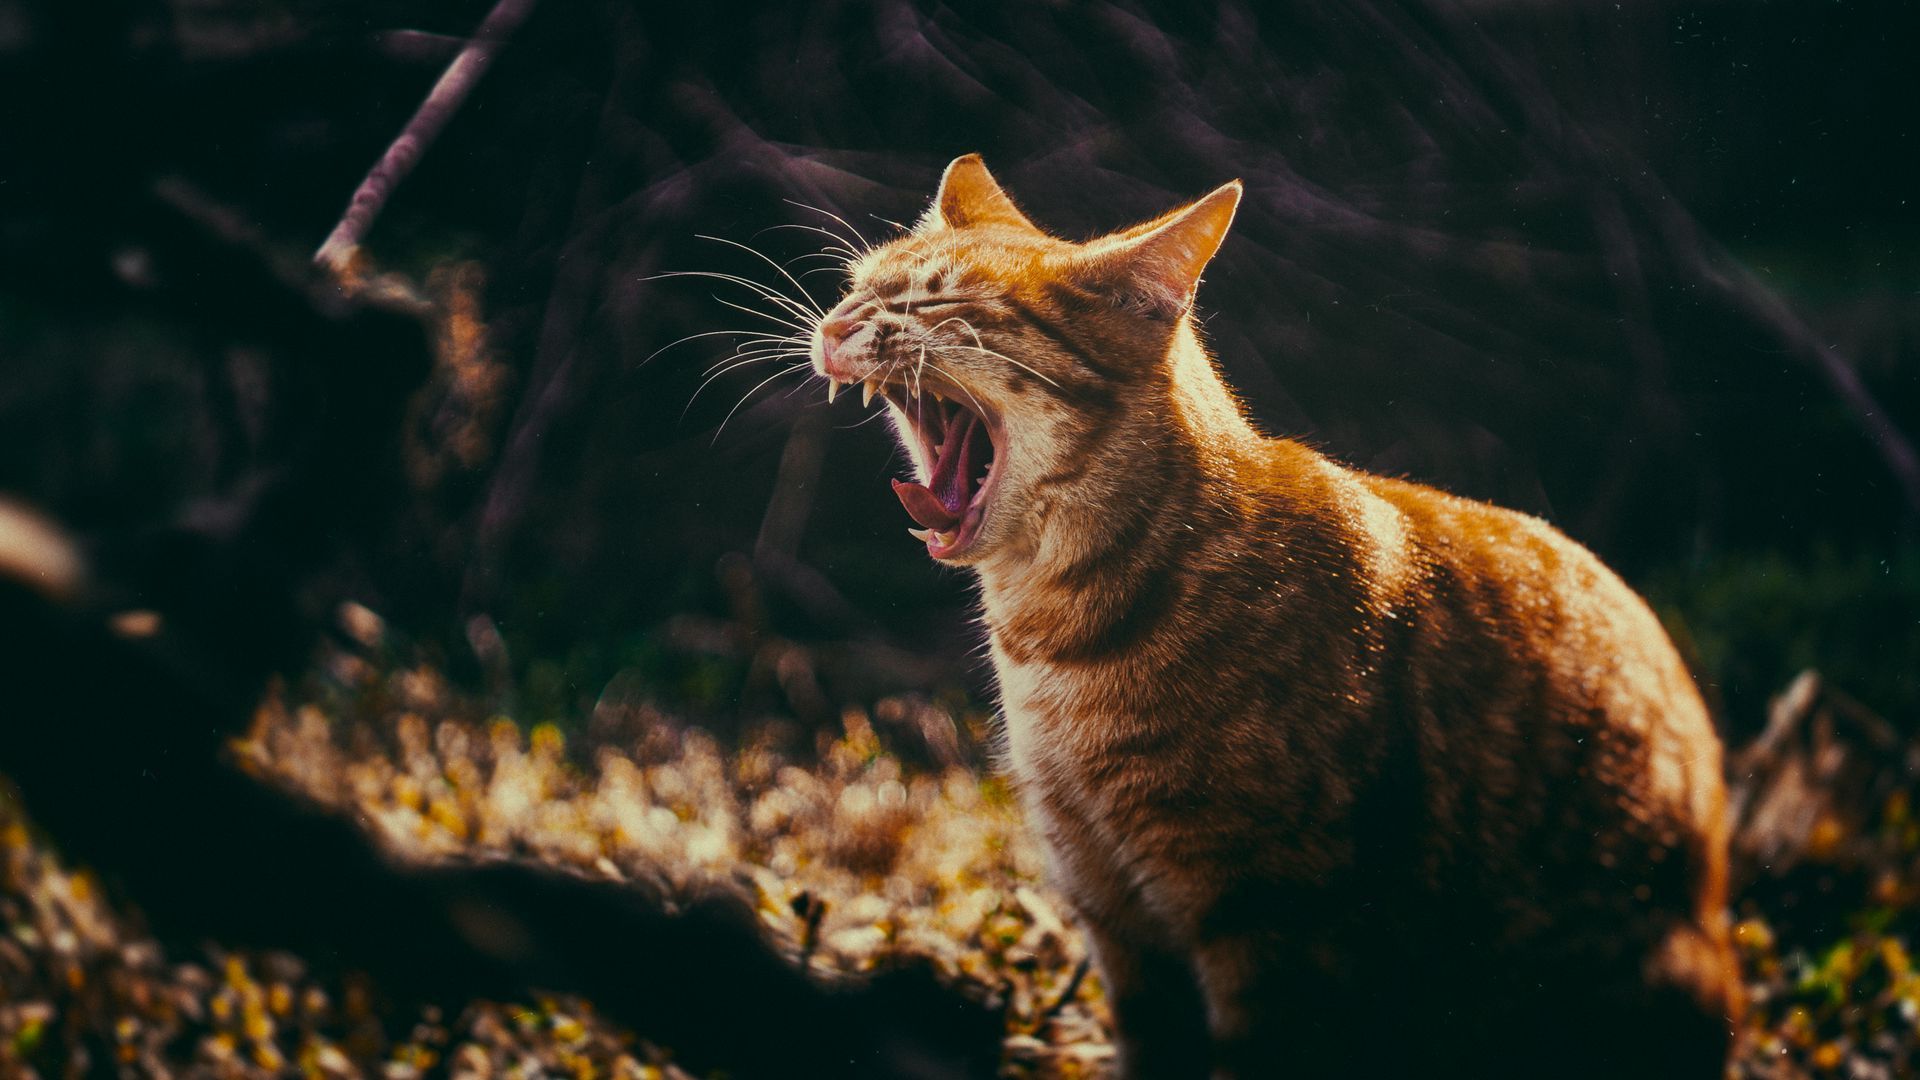 Wallpaper fangs cat yawn grin. Cat yawning, Cats, Yawning